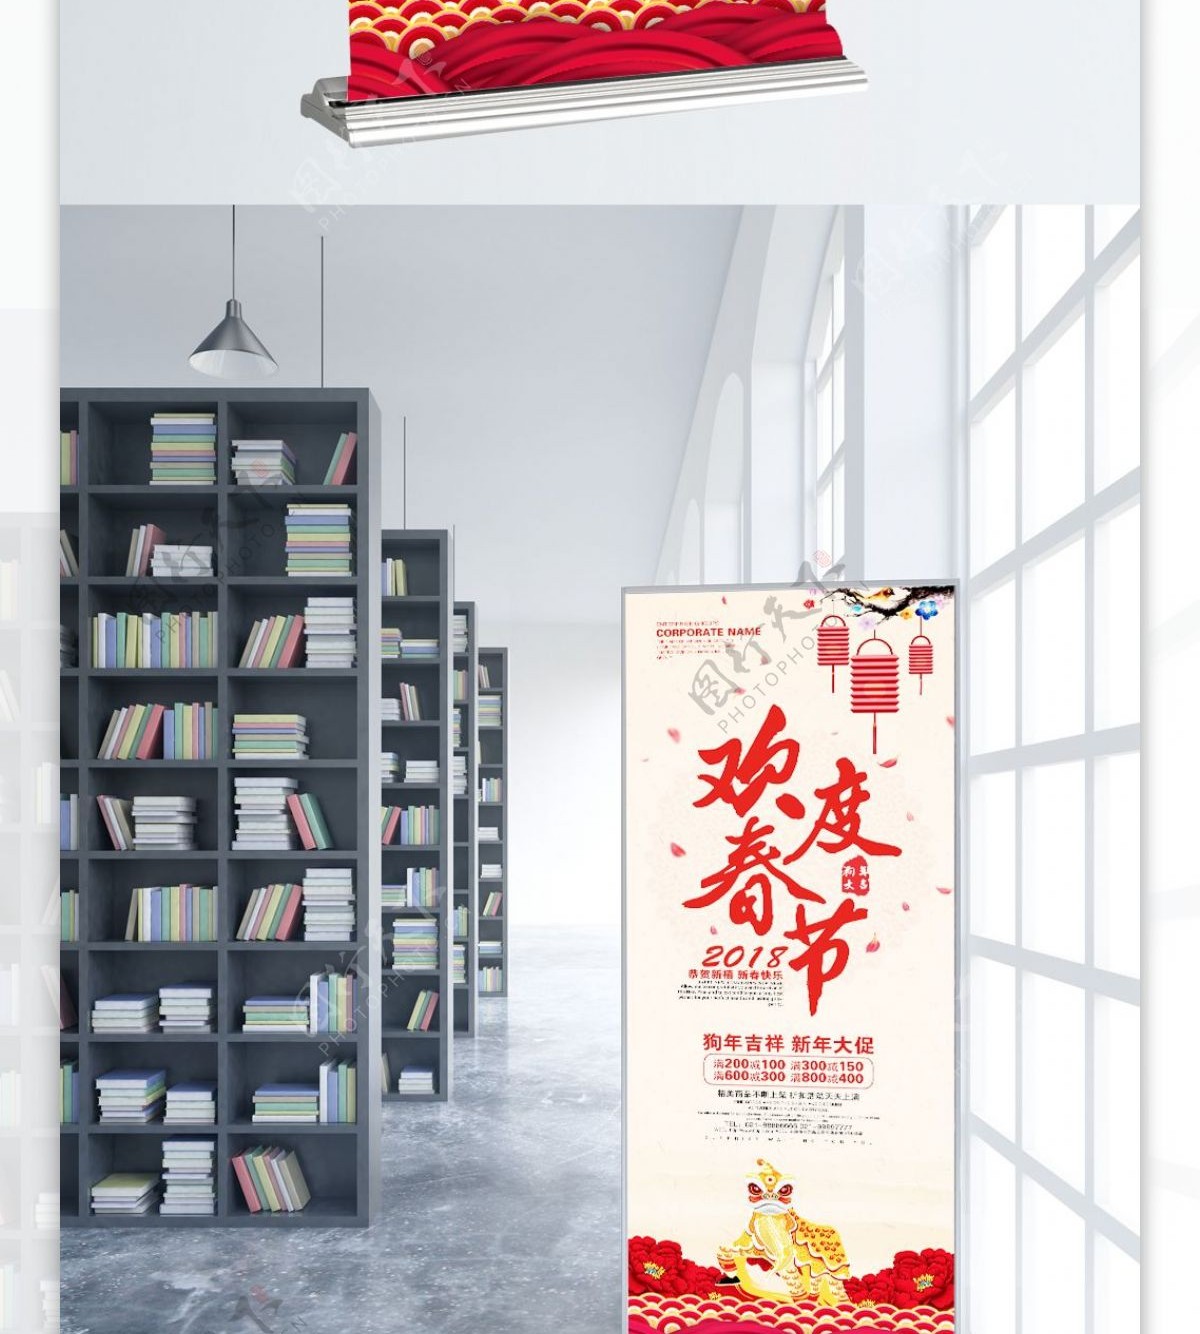 欢度春节中国风灯笼促销展架PSD模板